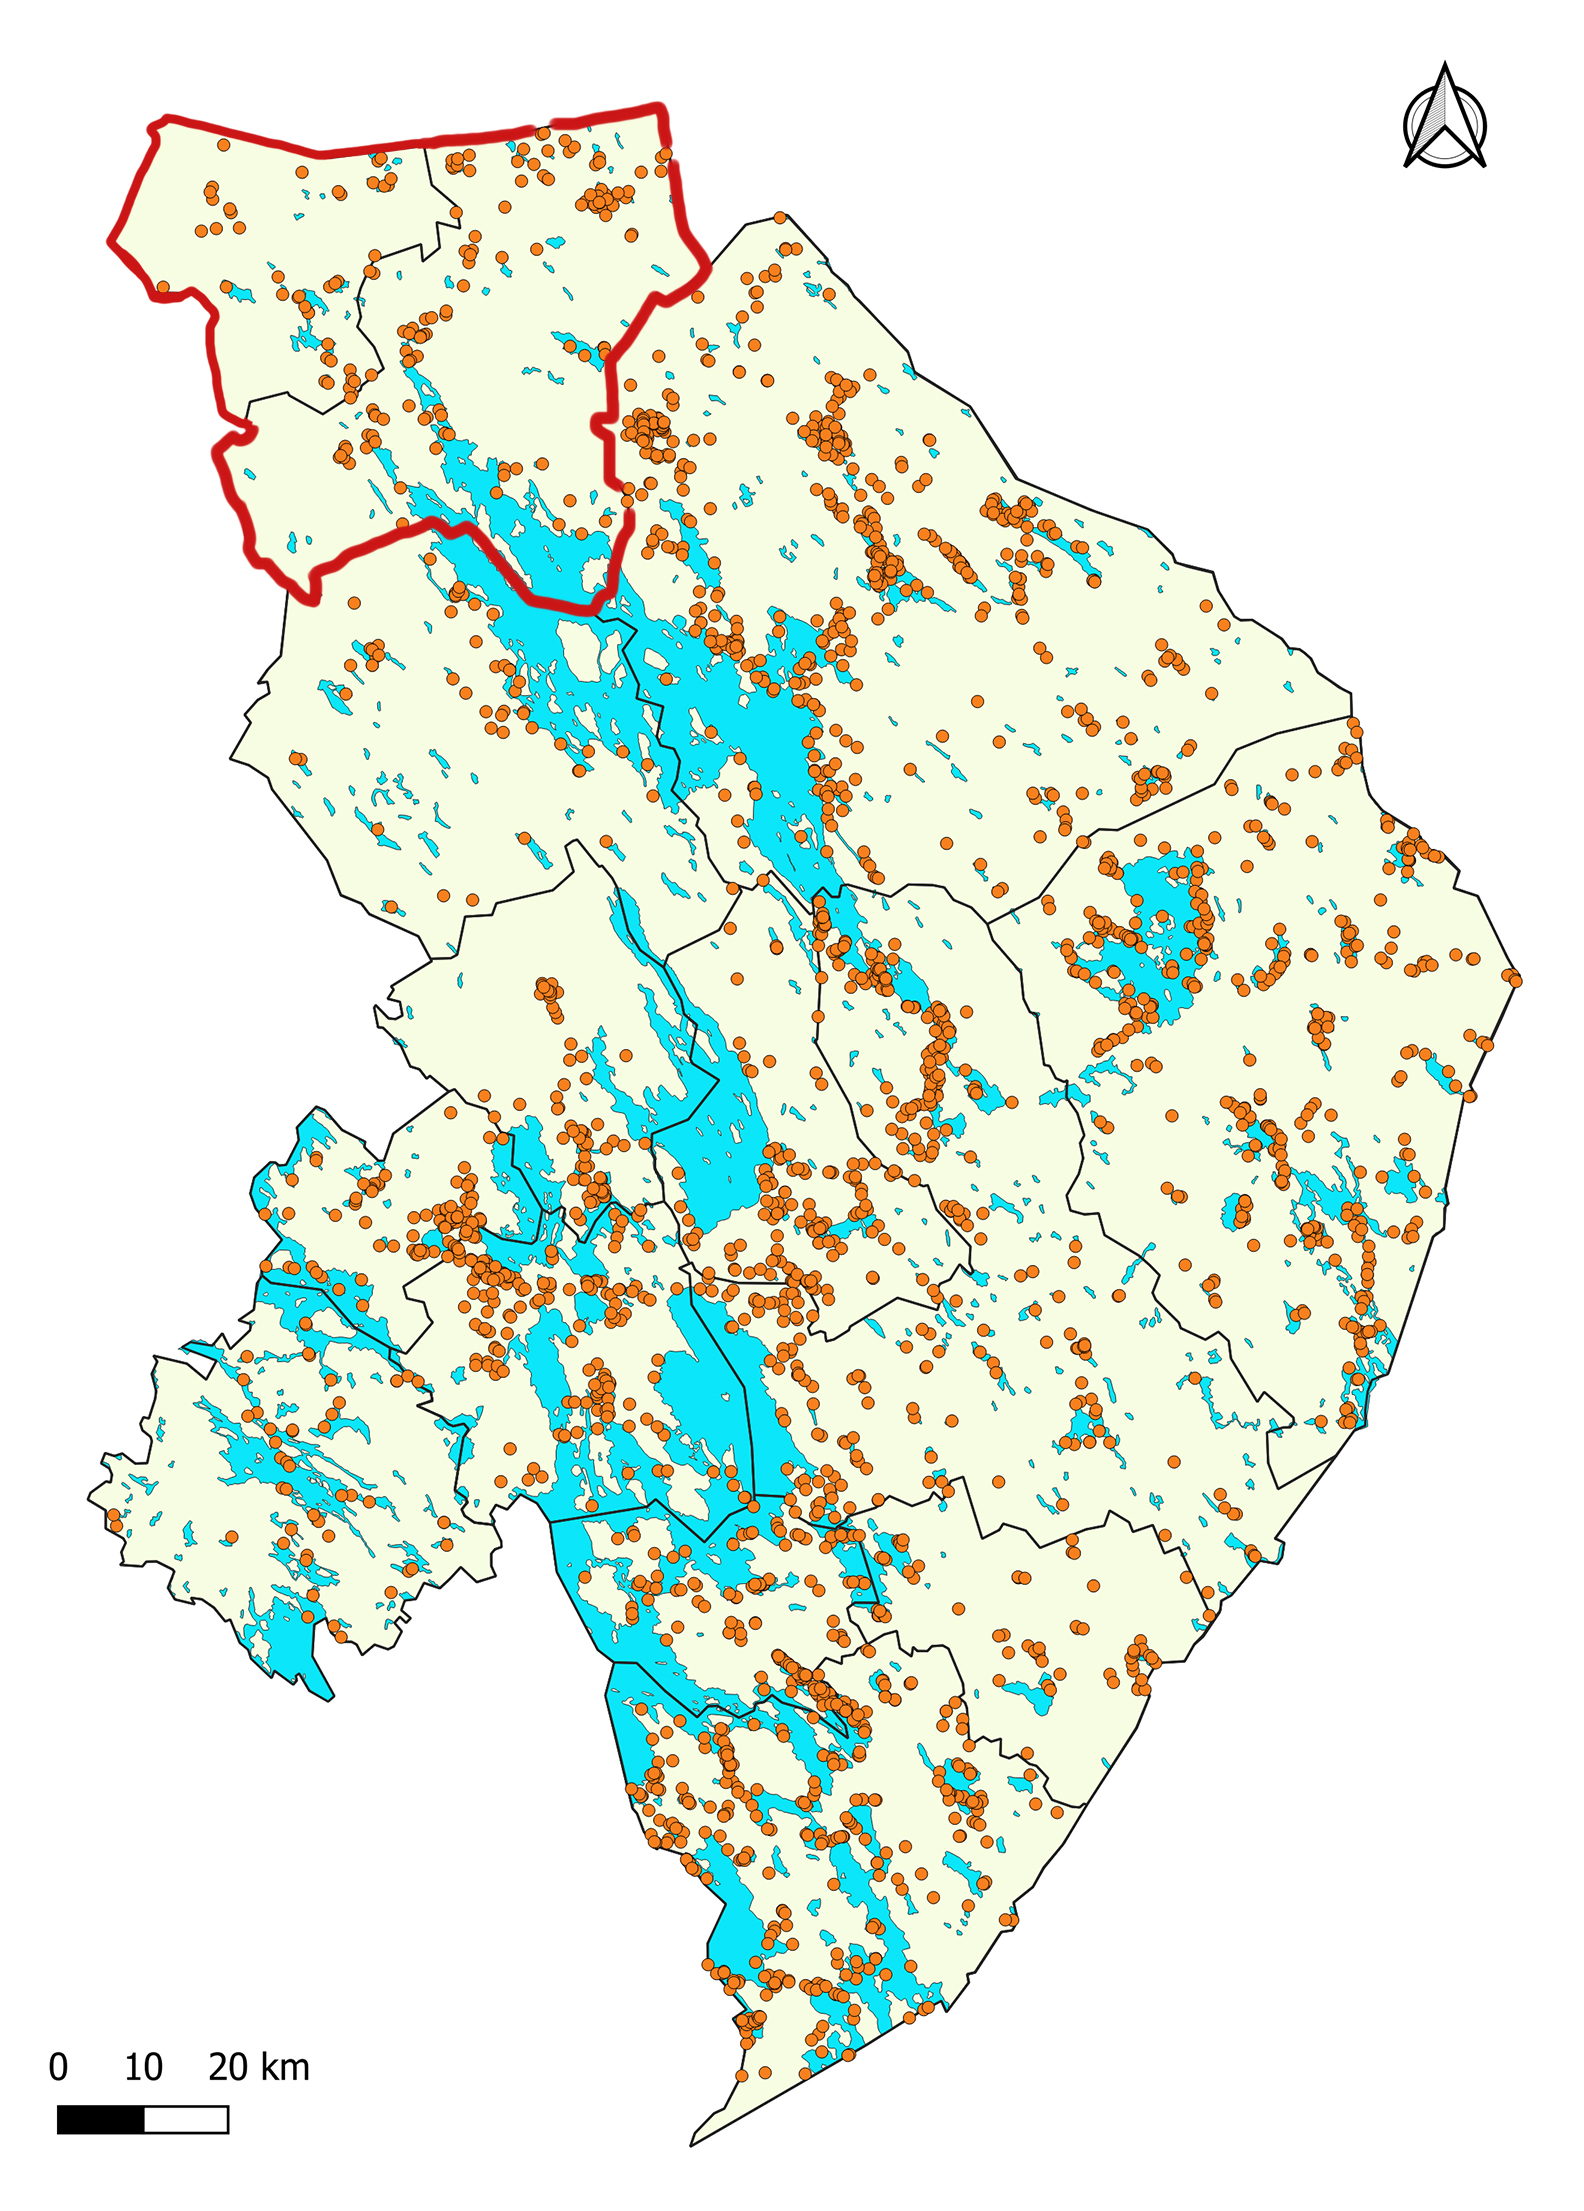 Nurmeksen alueen kiinteät muinaisjäännökset. Kartassa Nurmeksen kunnan rajat on piirretty punaisella, muut kunnat näkyvät mustin rajoin. Nurmeksen ja Valtimon välissä on raja mustalla värillä. Oranssit pallot kertovat löydöspaikoista. Vesistöt on merkitty sinisellä.